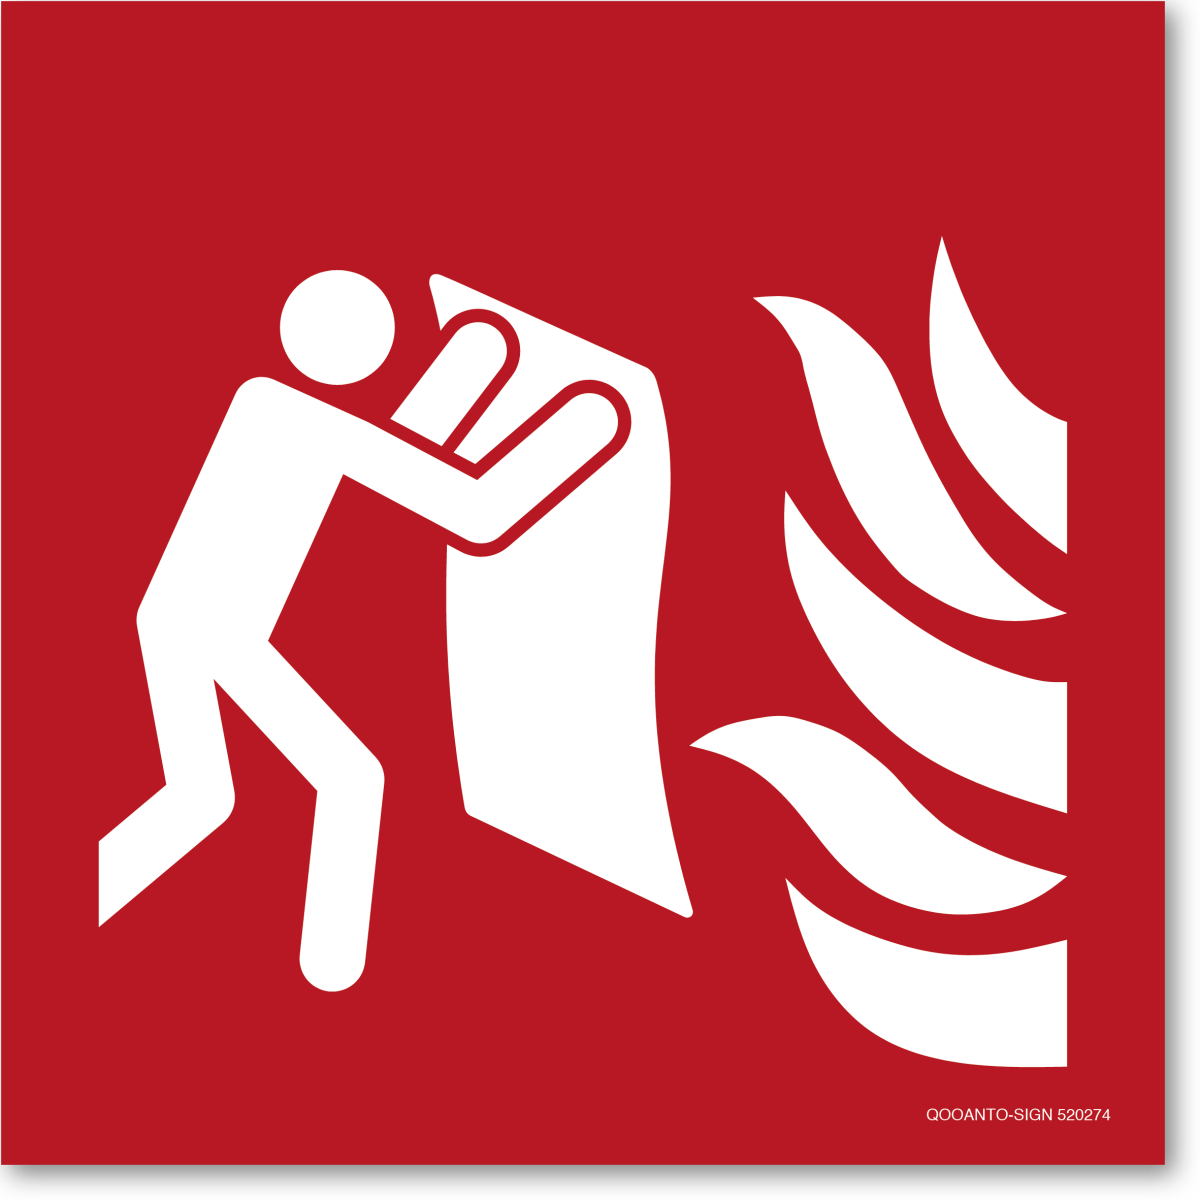 Feuerlöschdecke, EN ISO 7010, F016 Brandschutzschild oder Aufkleber aus Alu-Verbund oder Selbstklebefolie mit UV-Schutz - QOOANTO-SIGN